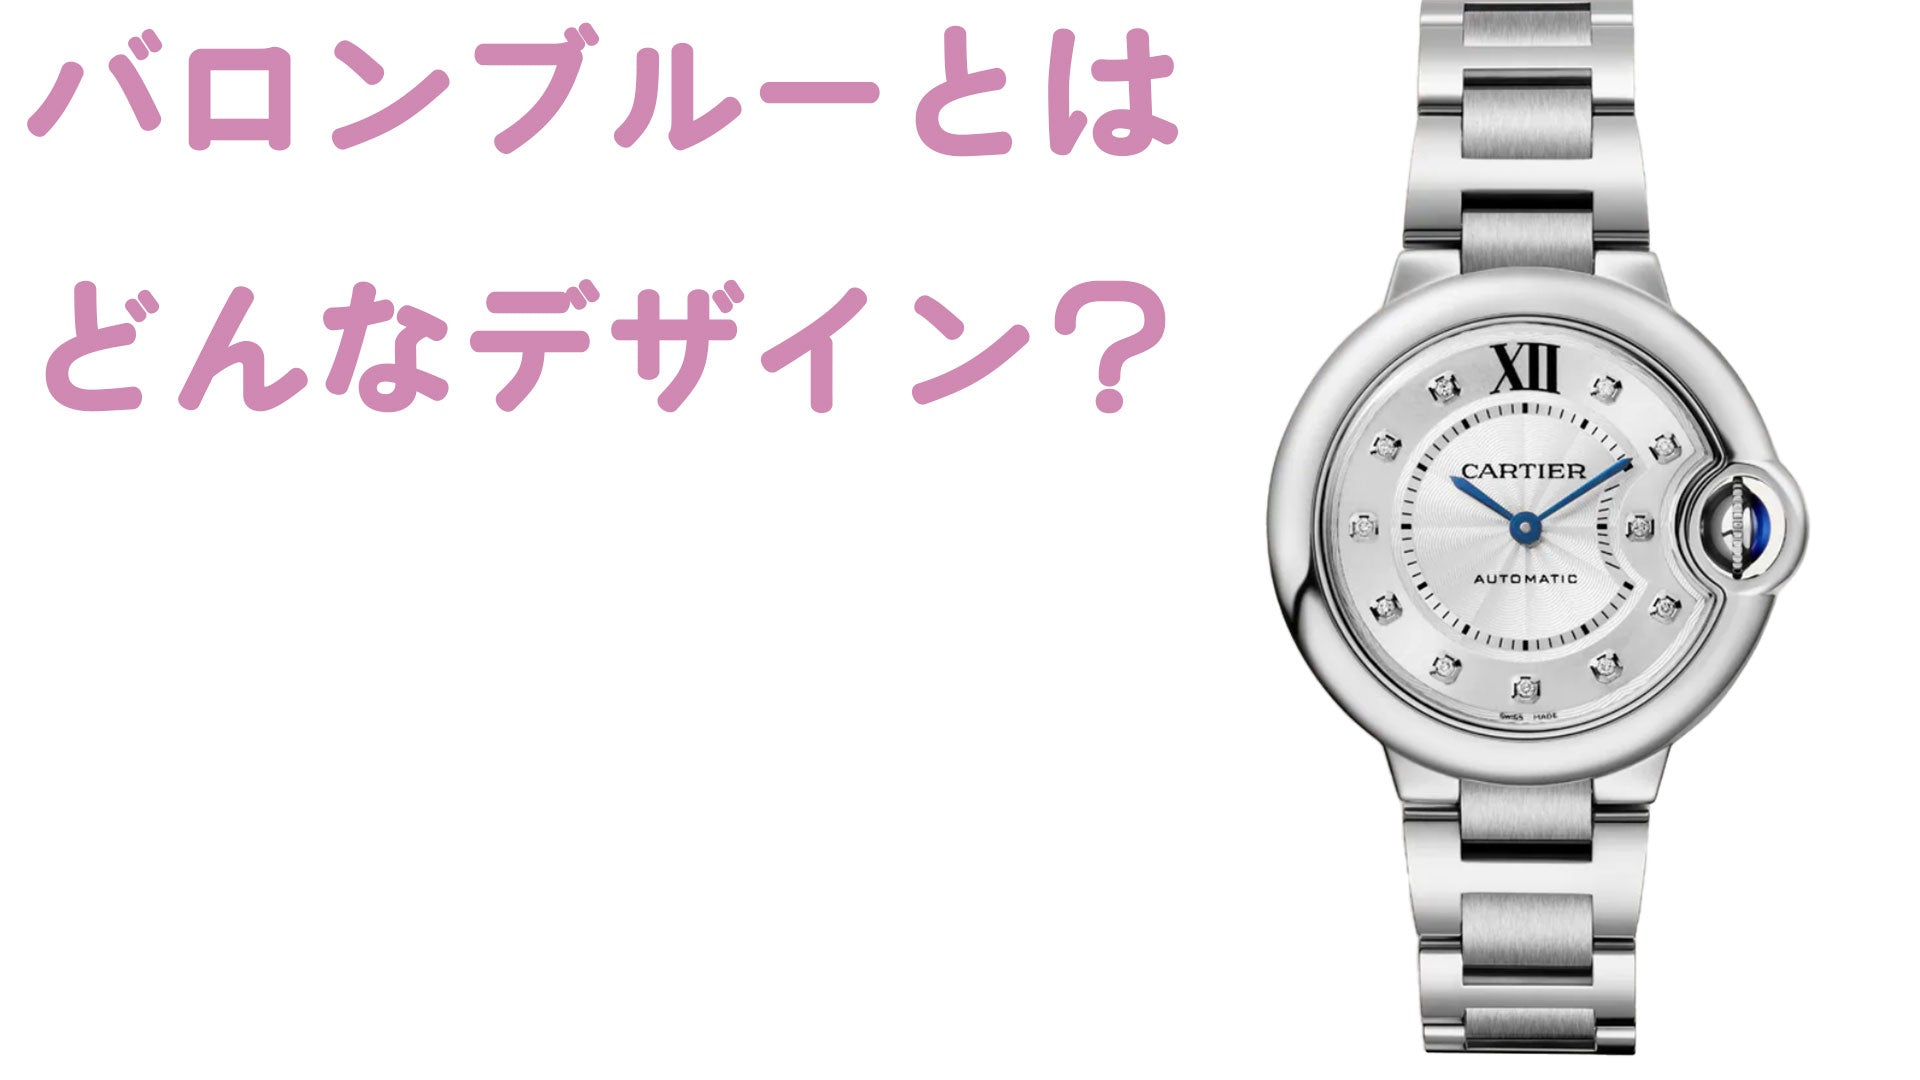 What kind of design is the Cartier watch Ballon Bleu?